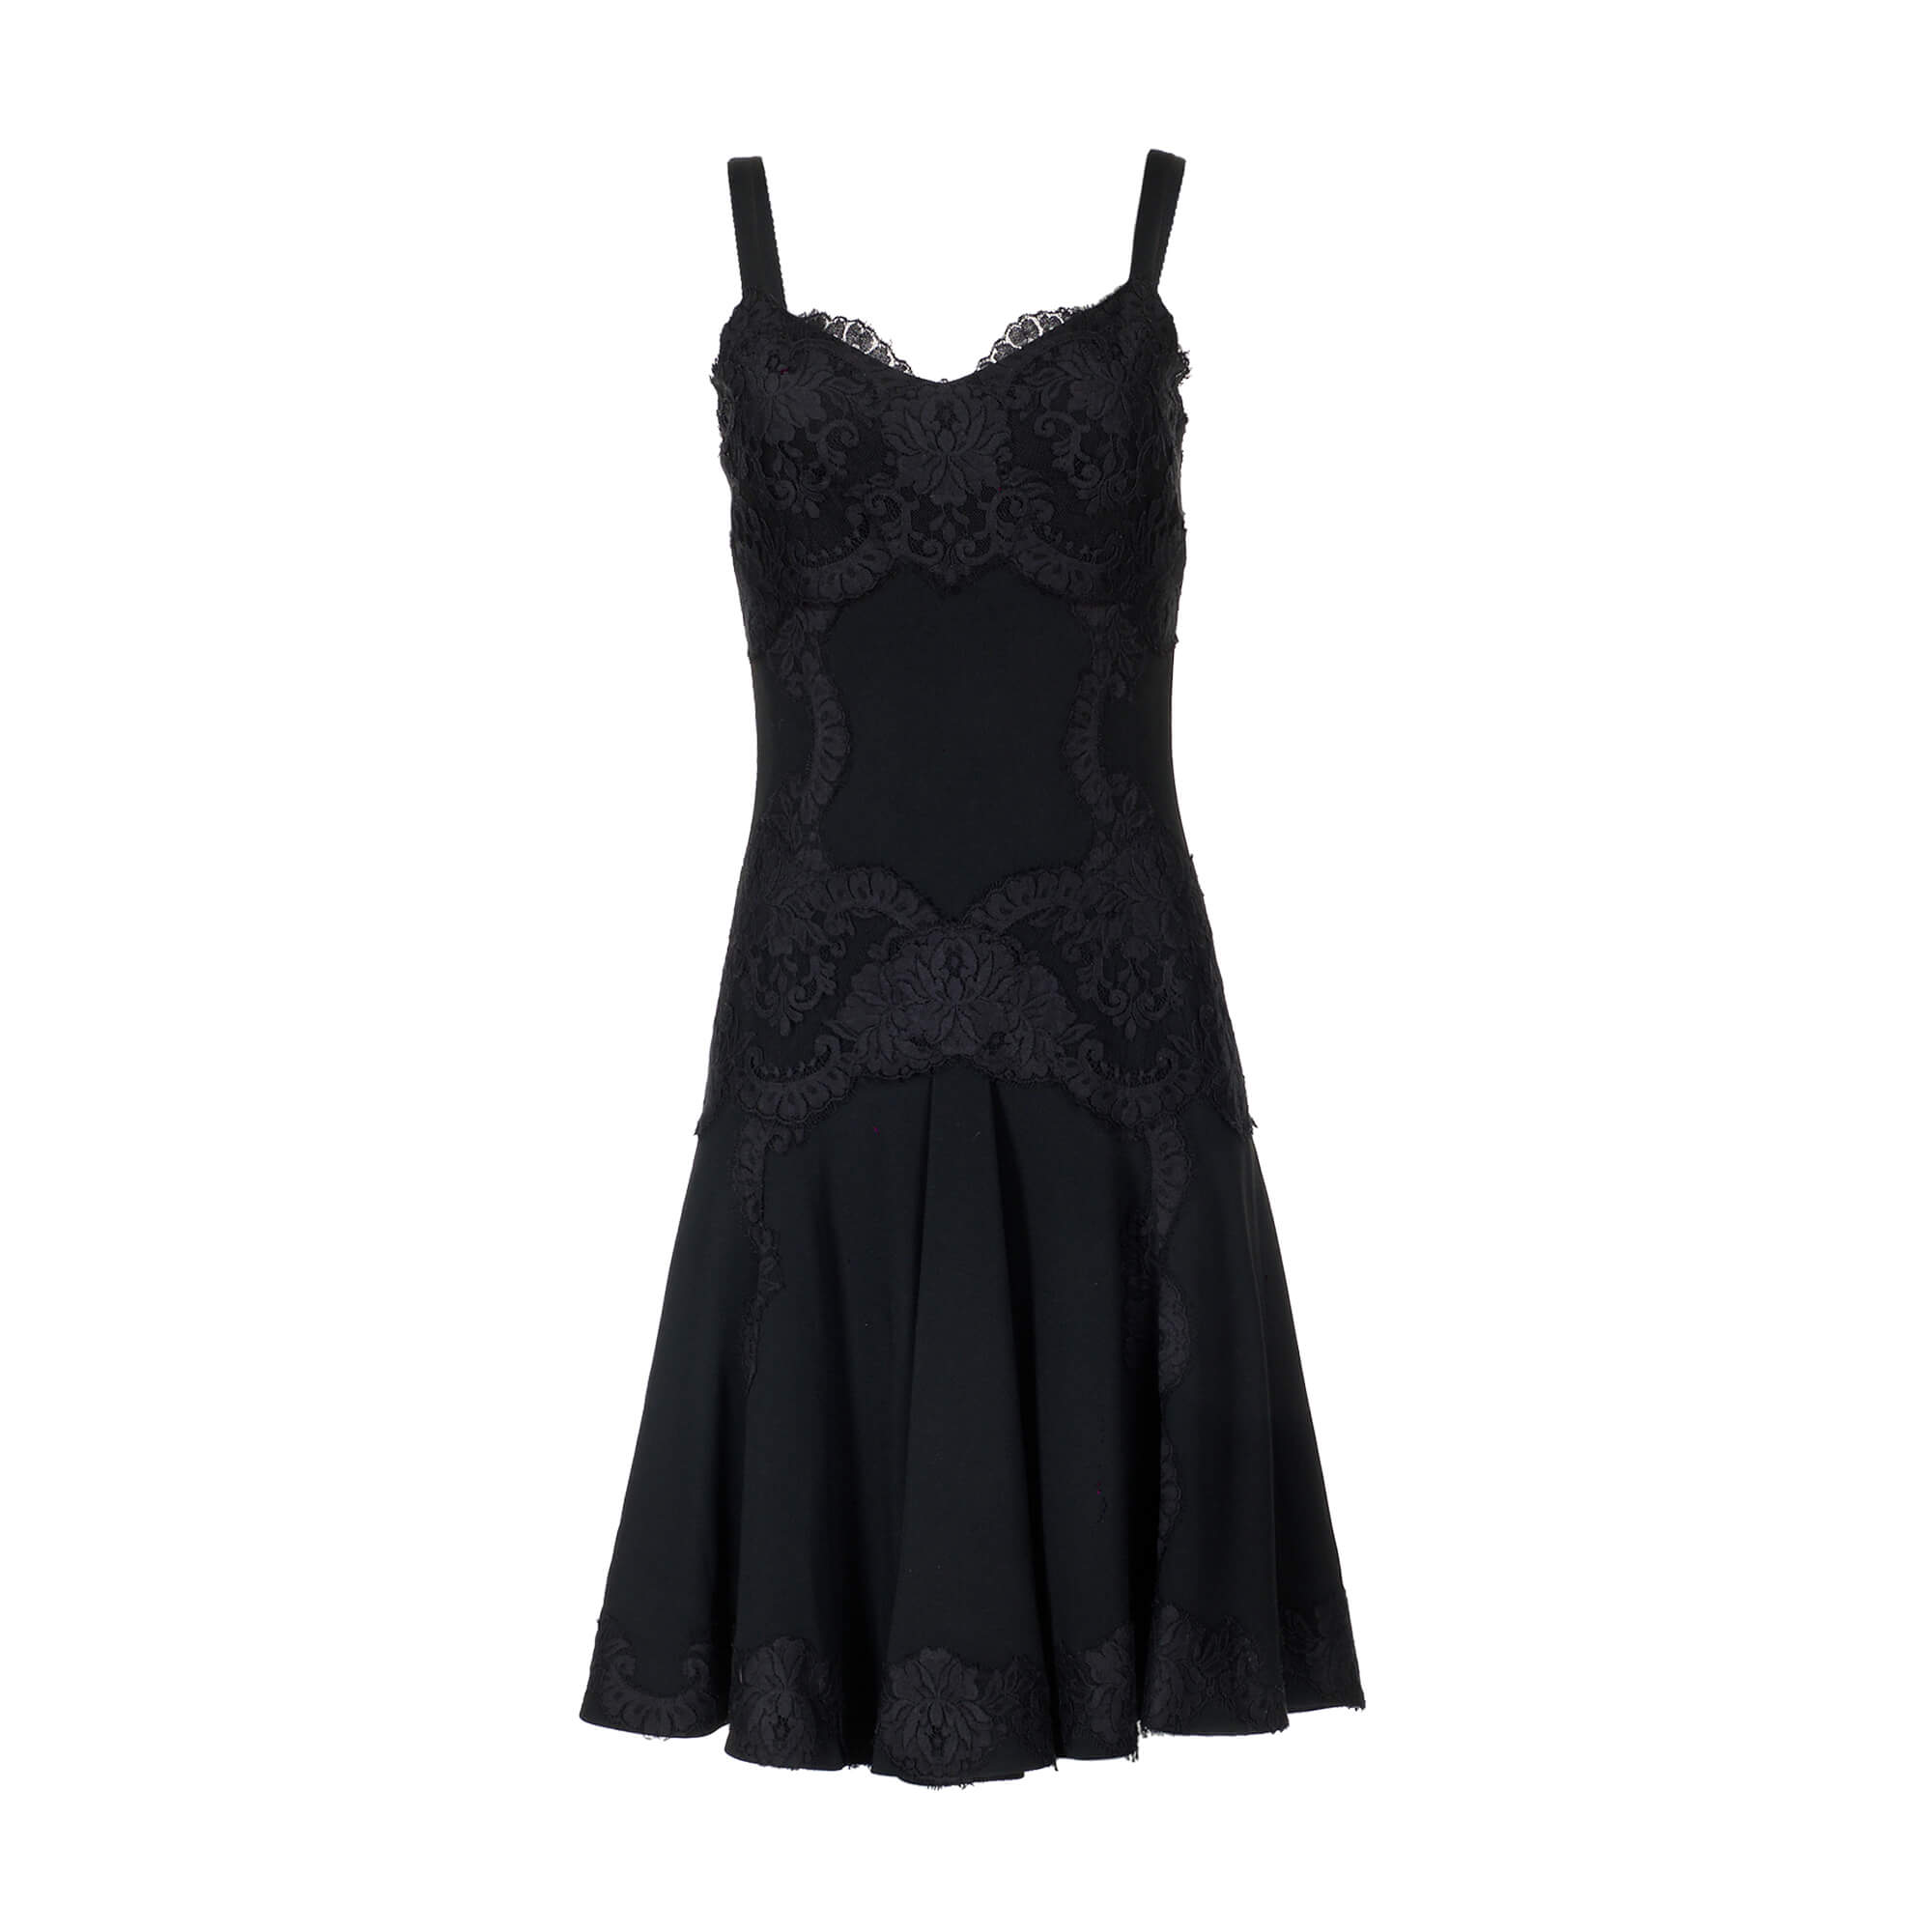 Women Dolce & Gabbana Sleeveless Black and Lace Dress -  Black Size S IT 40 US 4